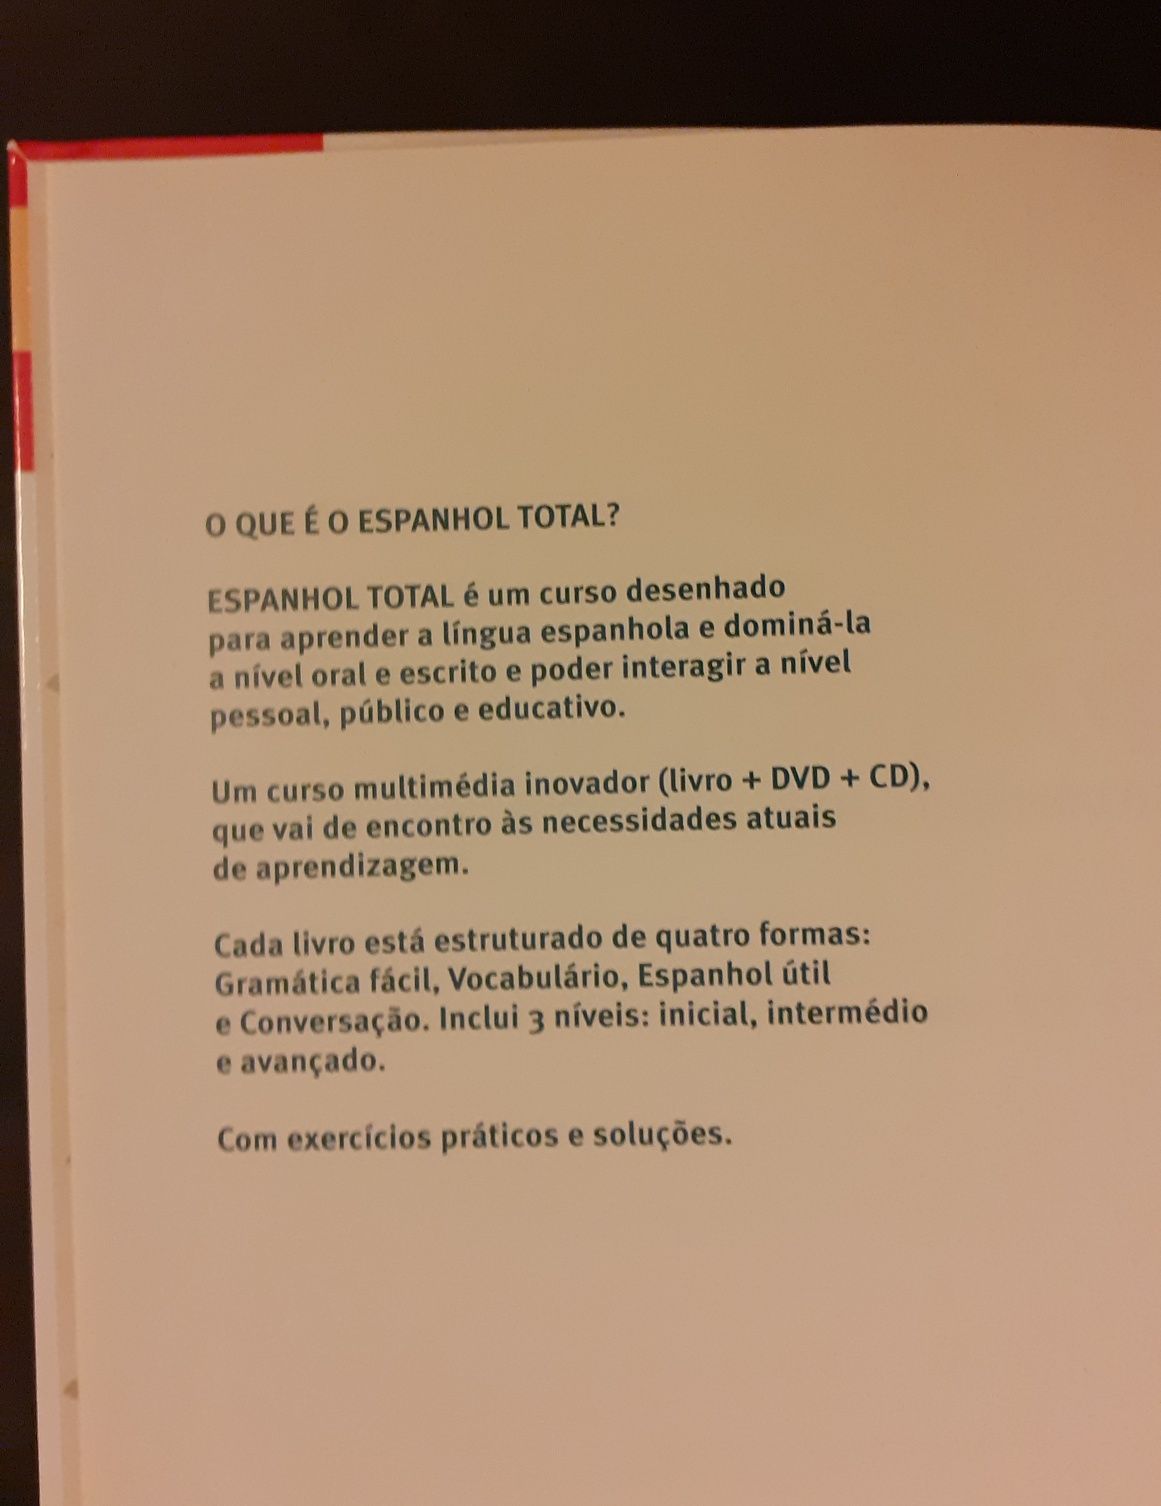 Espanhol Total - Auto Aprendizagem c/ livro, CD & DVD